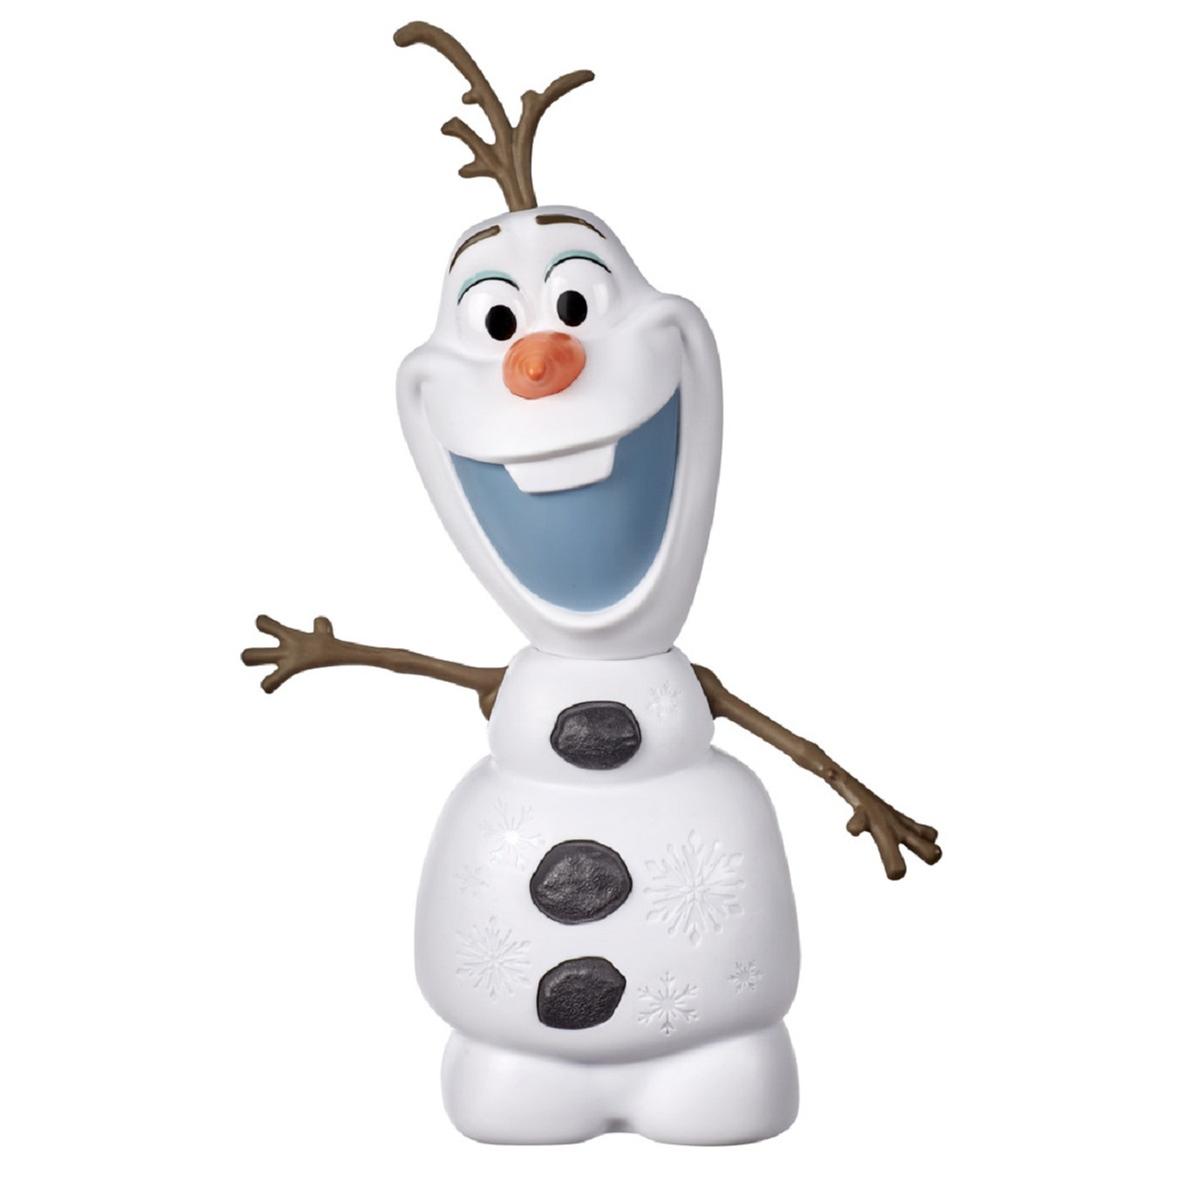 Frozen - Olaf Camina y Habla Frozen 2 | Dp Frozen | Toys"R"Us España